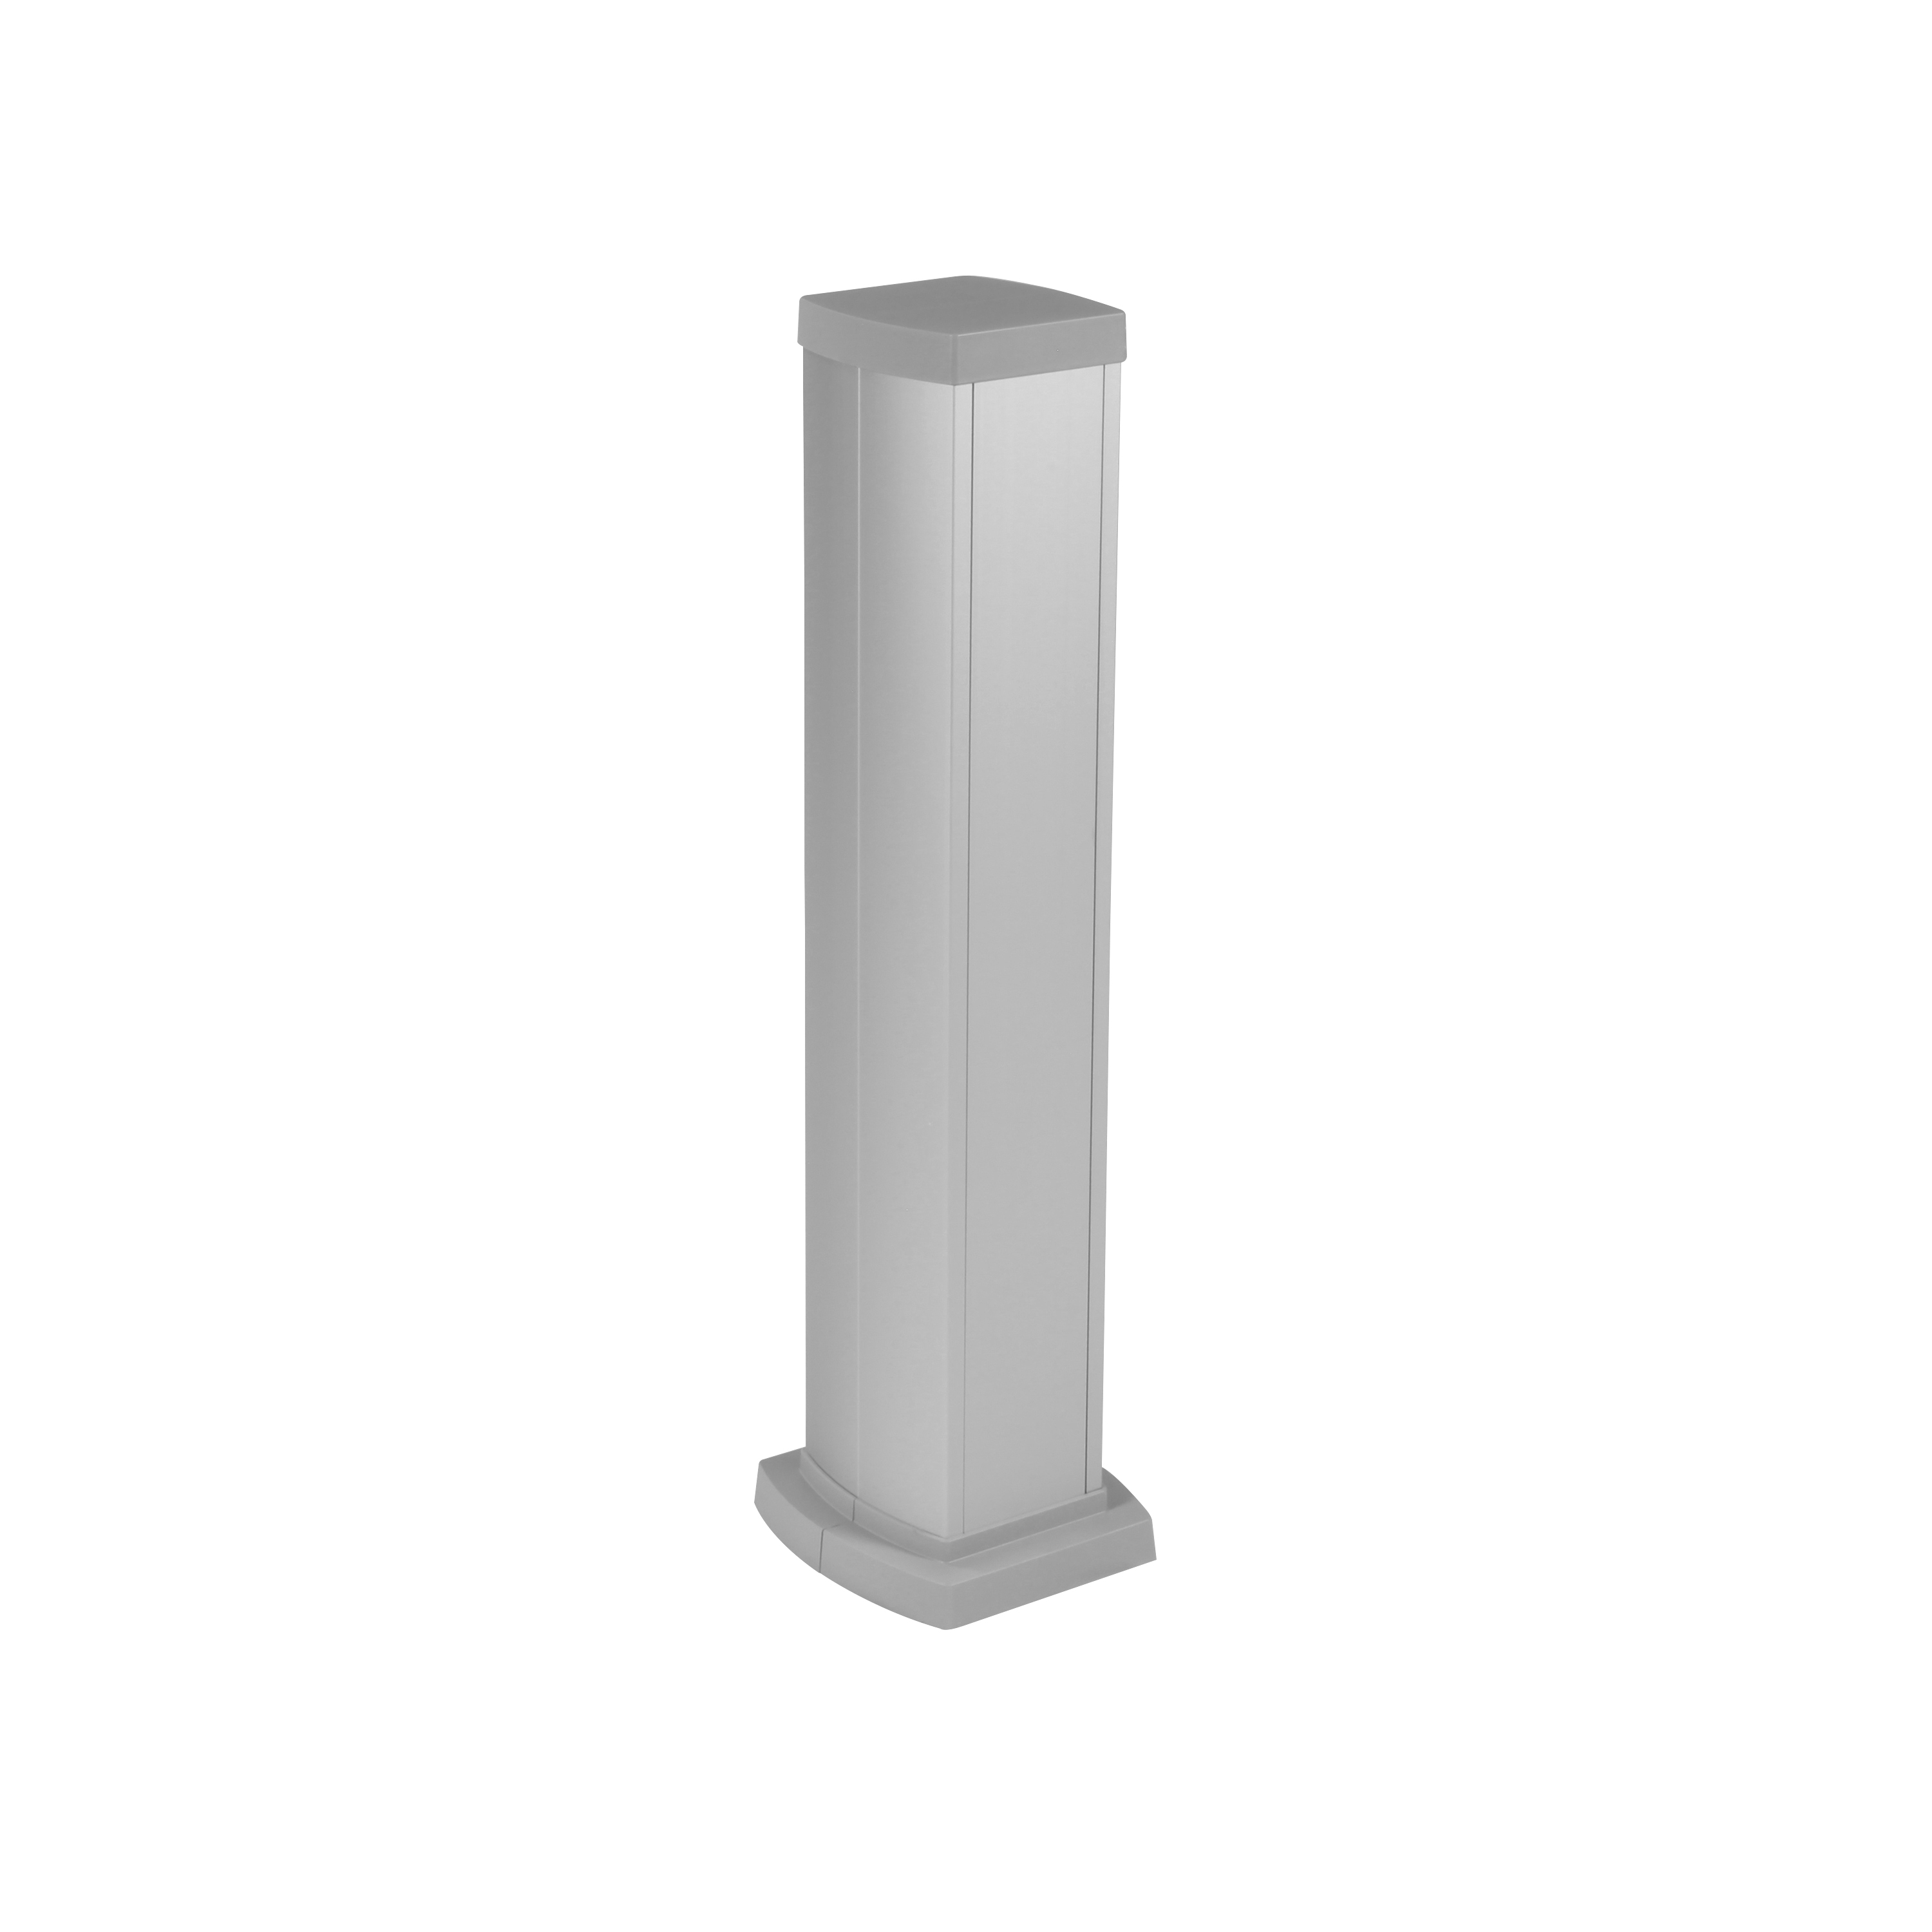 Legrand Универсальная мини-колонна алюминиевая с крышкой из алюминия 2 секции, высота 0,68 метра, цвет алюминий